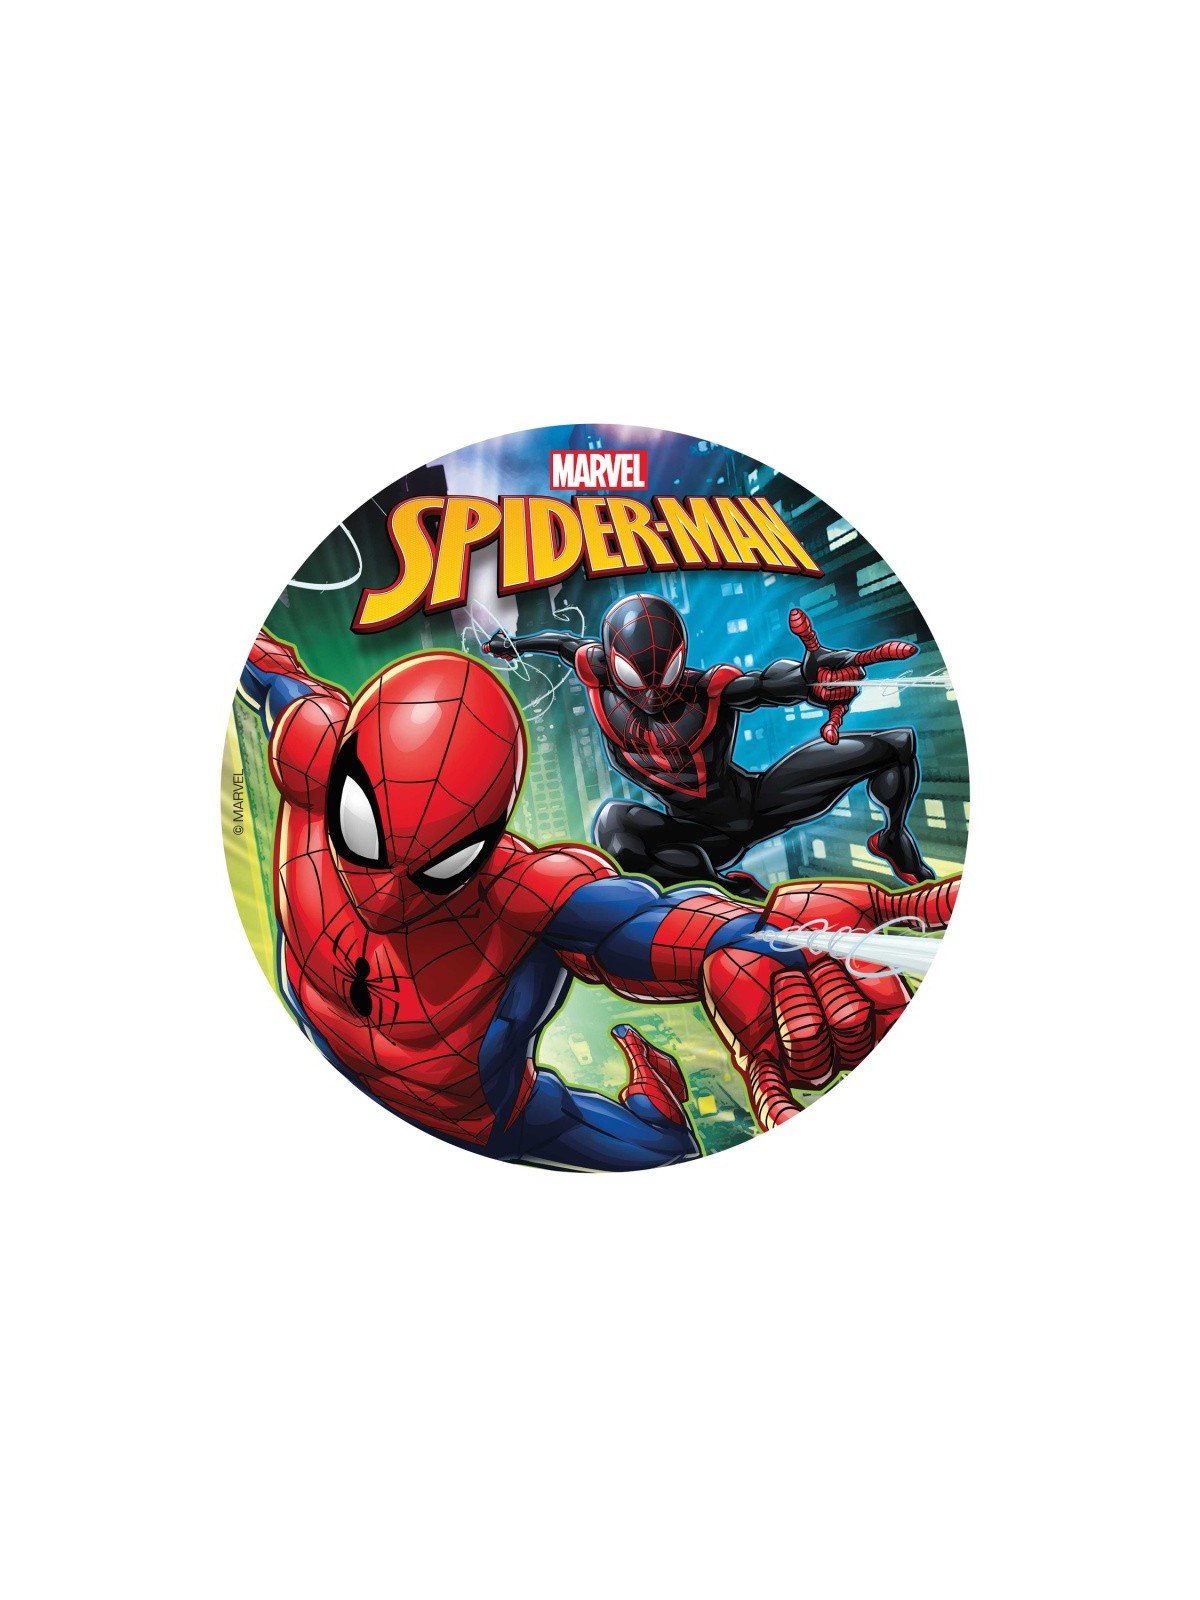 Dekora - fondánový list - Spiderman  - černý - 20cm